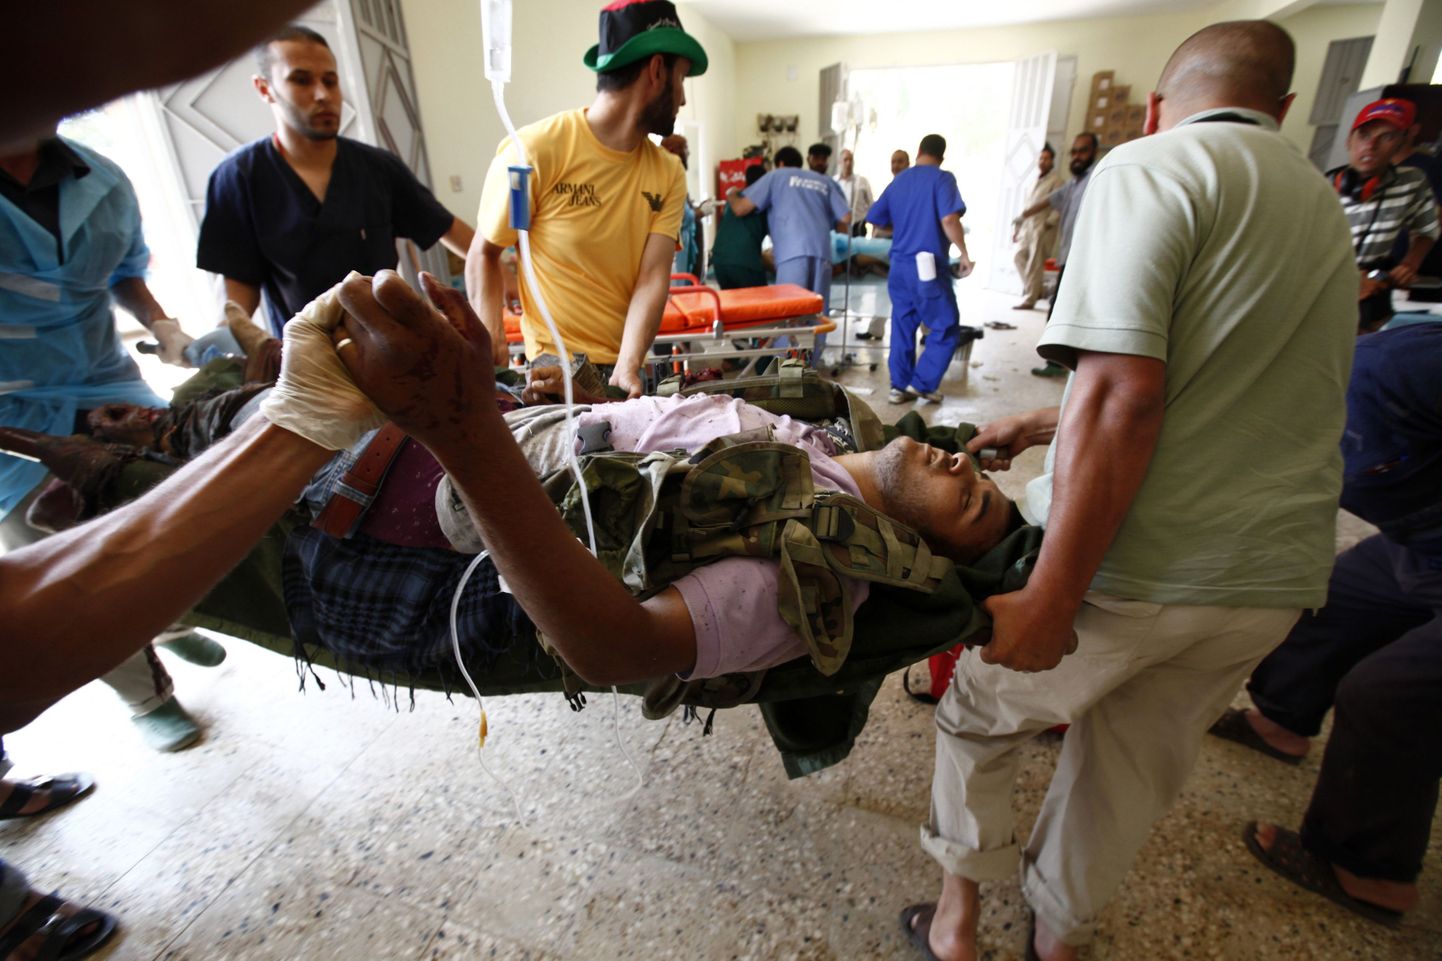 Meditsiinitöötajad andmas abi raskelt vigastada saanud liibüalasele